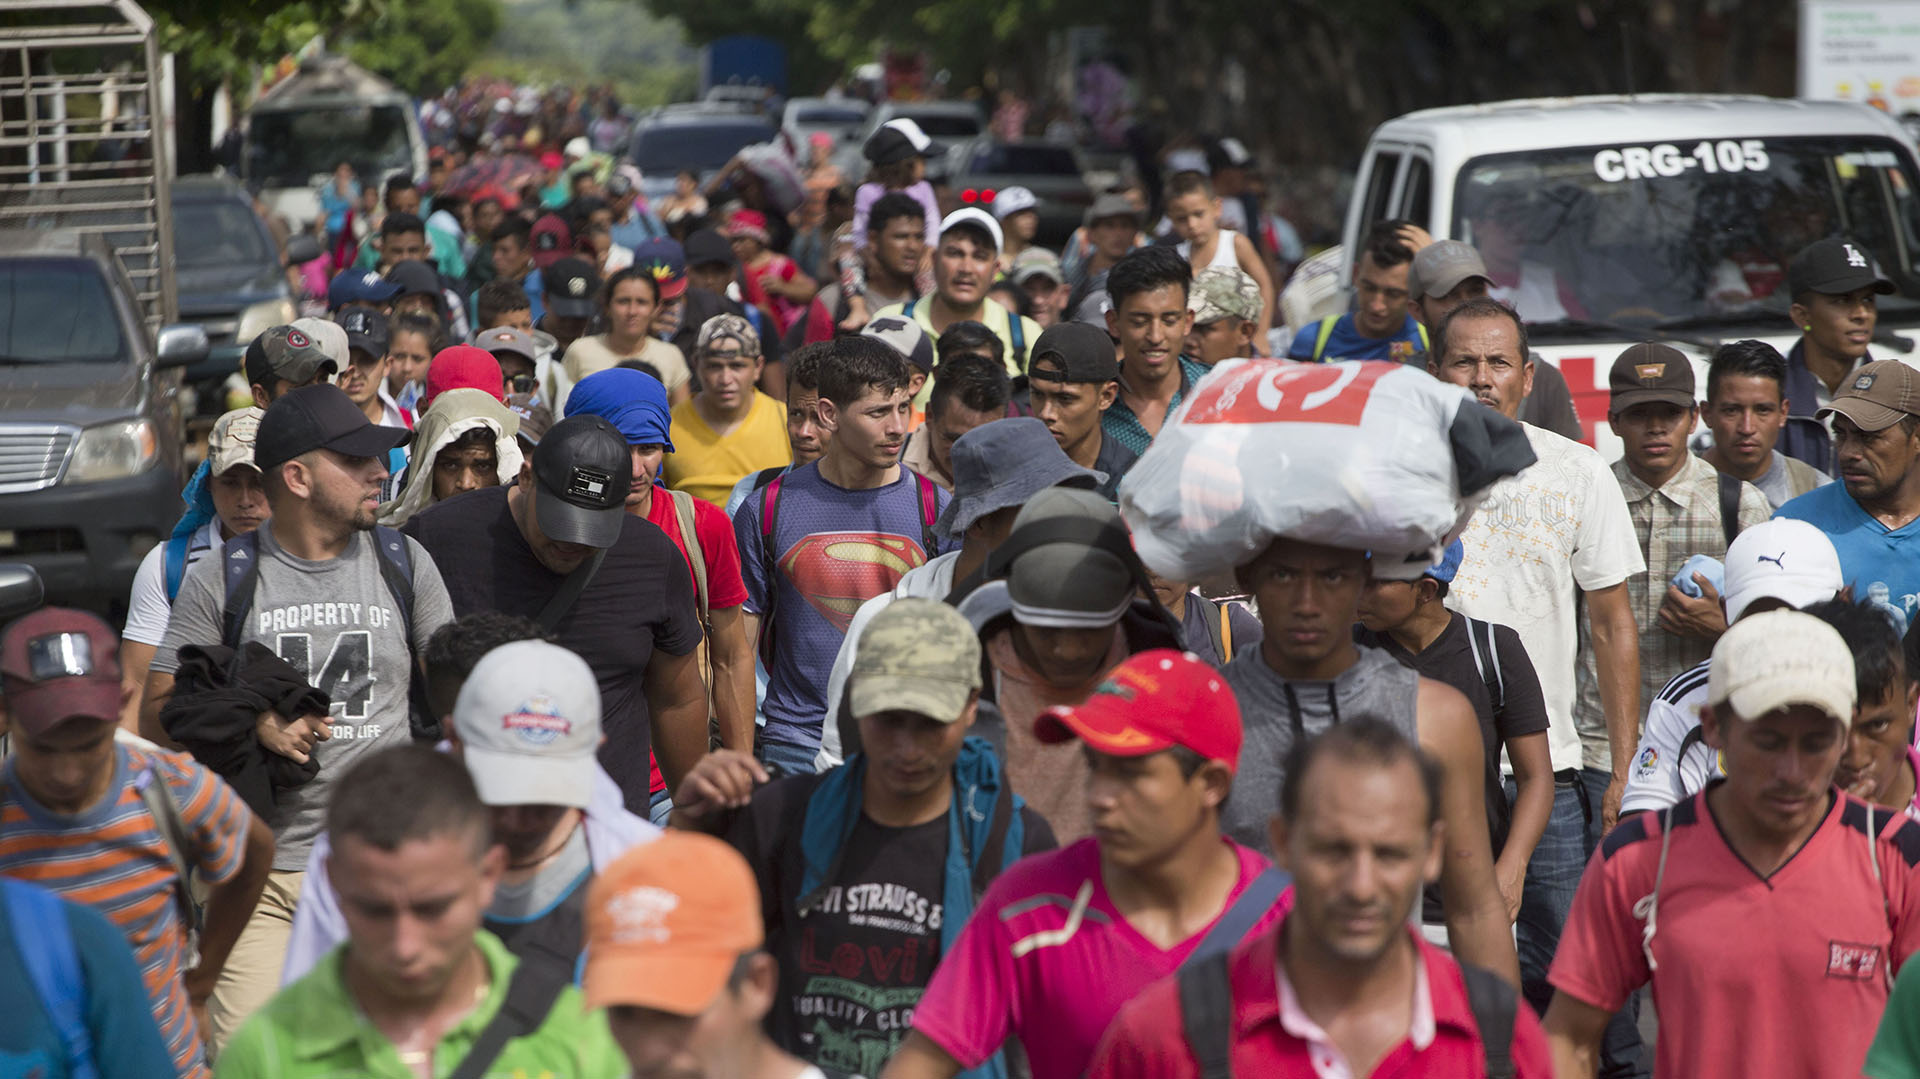 Miles migrantes hondureños regresaron a su país luego de unirse a la caravana que intentaba llegar a EEUU (AP Photo/Moises Castillo)